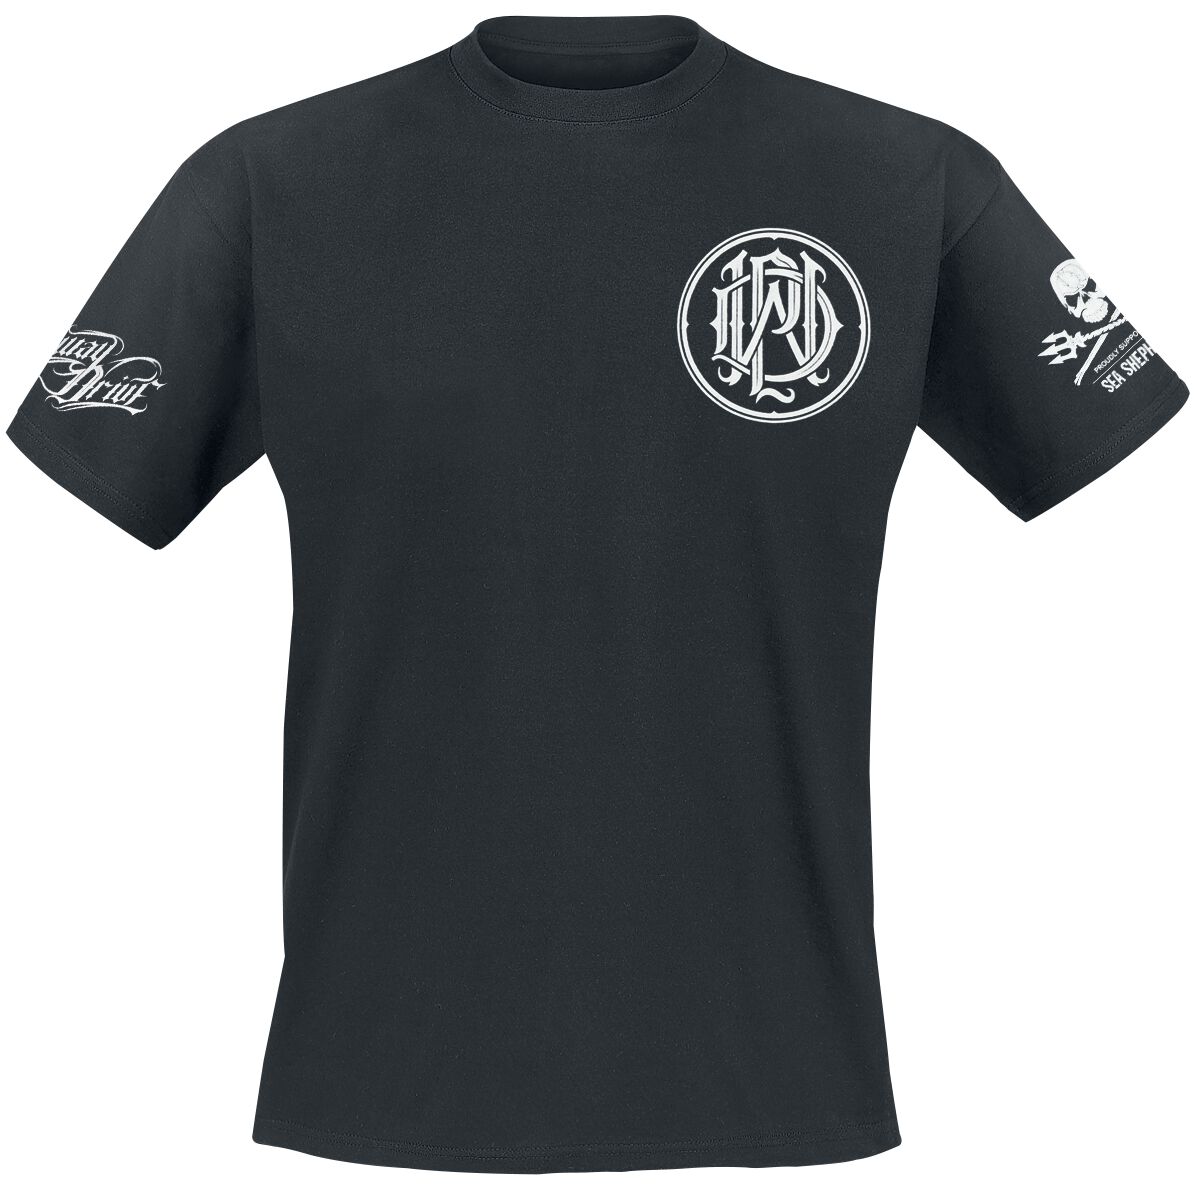 Parkway Drive T-Shirt - Sea Shepherd Cooperation - How Will You Justify - S bis XXL - für Männer - Größe S - schwarz  - EMP exklusives Merchandise!